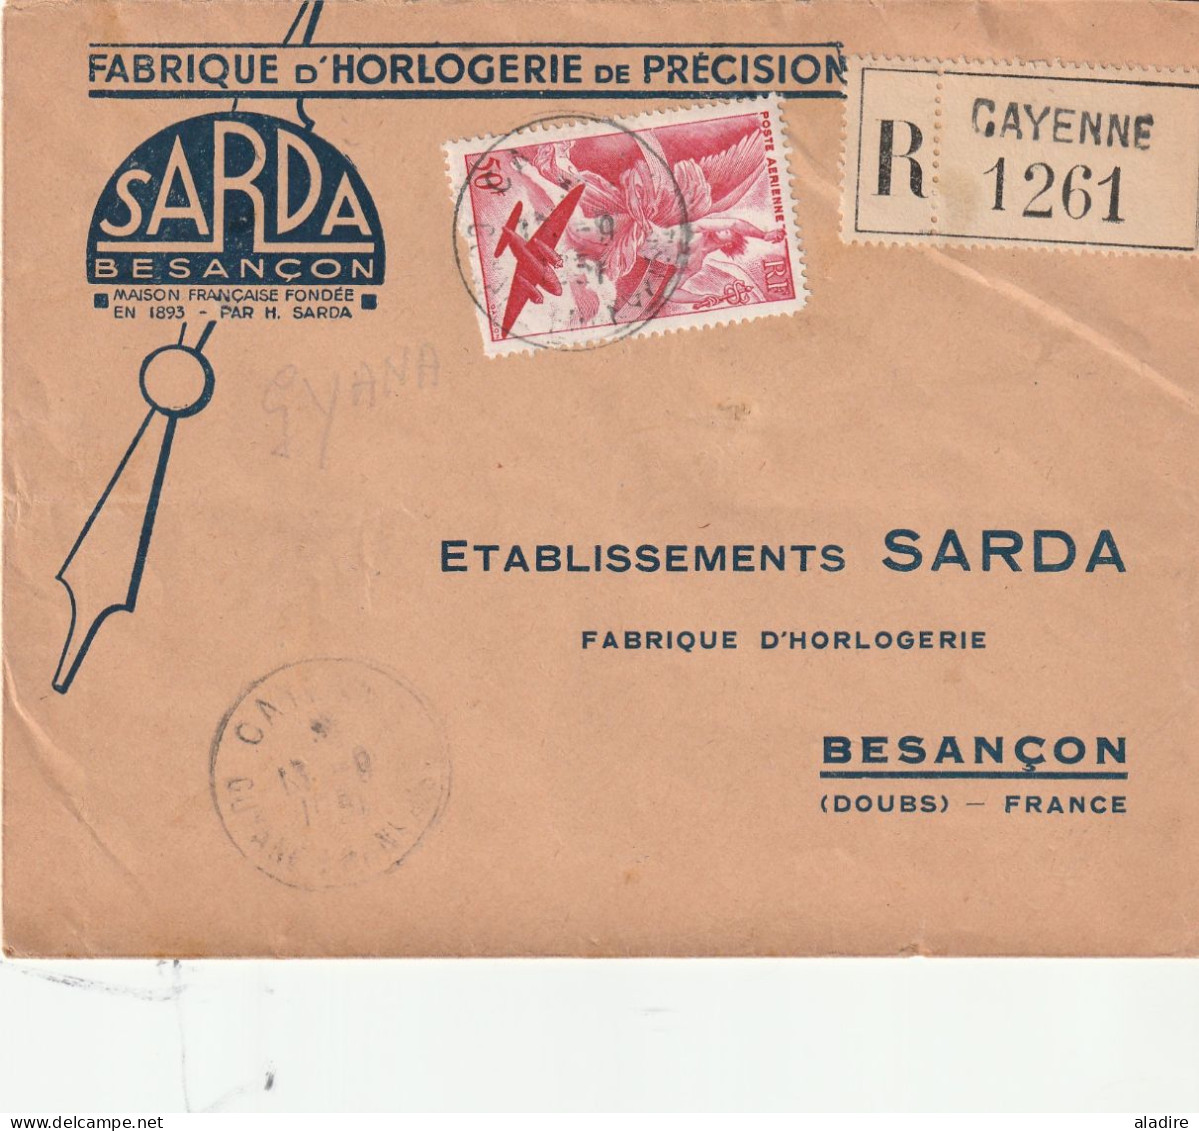 1844 - 1975 - petite collection de 13 lettres, cartes postales, entiers, enveloppes de GUYANE FRANCAISE (17 scans)